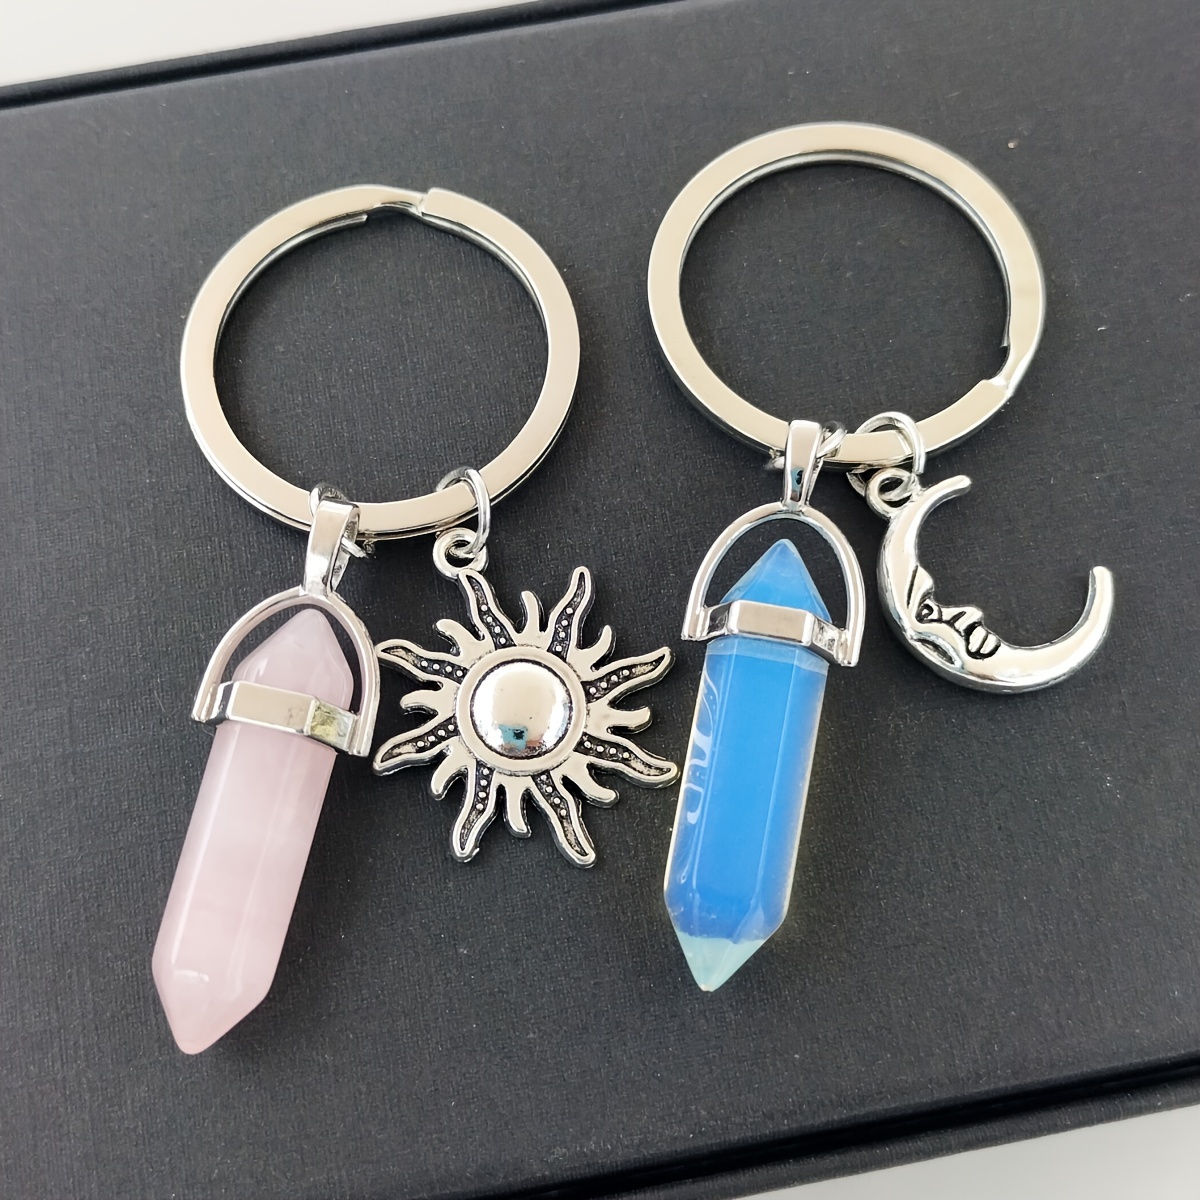 

2pcs, Elegant Exquisite Beautiful Crystal Pendant Keychains, Sun & Moon, For Men Women Couple Bag Car Key Decors Valentine's Day Gift Souvenir